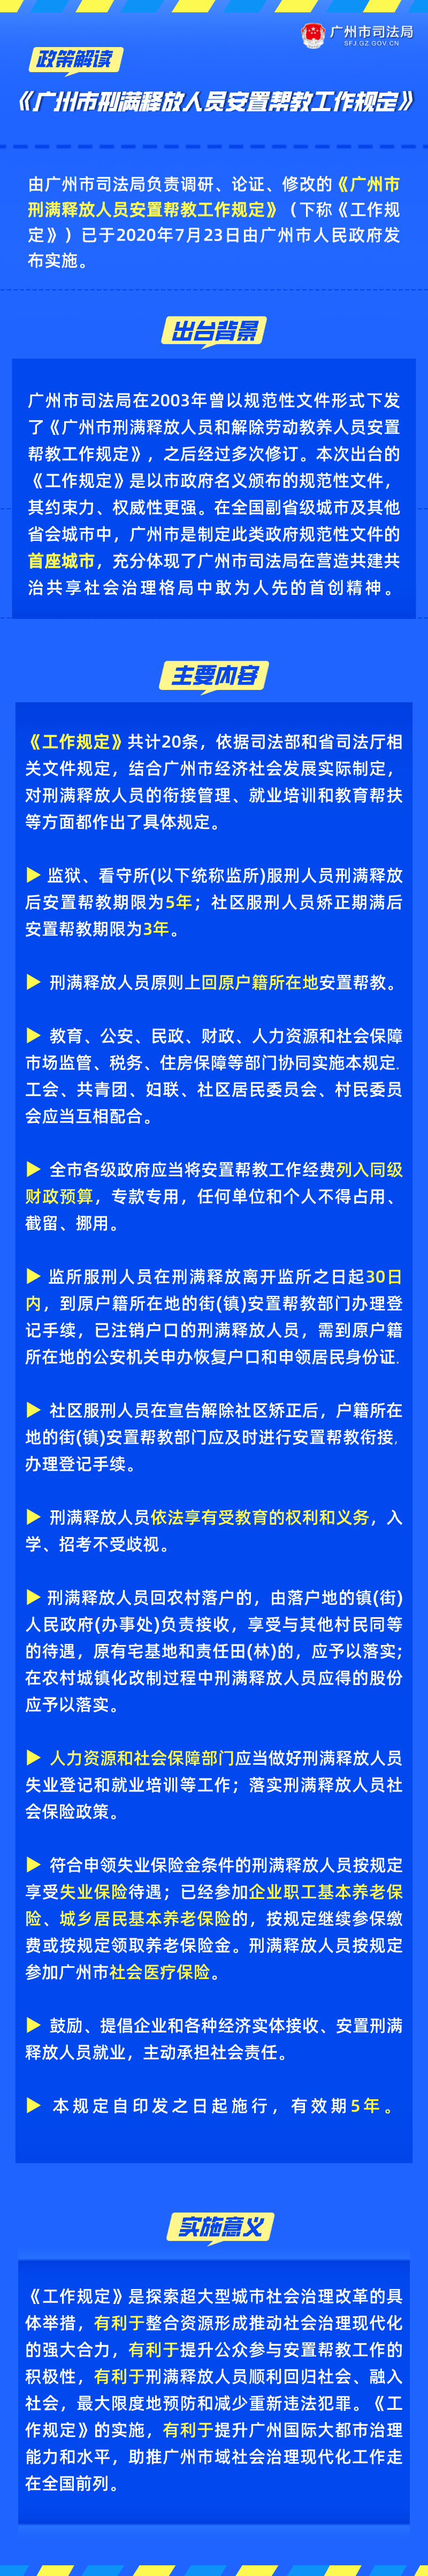 《广州市刑满释放人员安置帮教工作规定》的解读.png